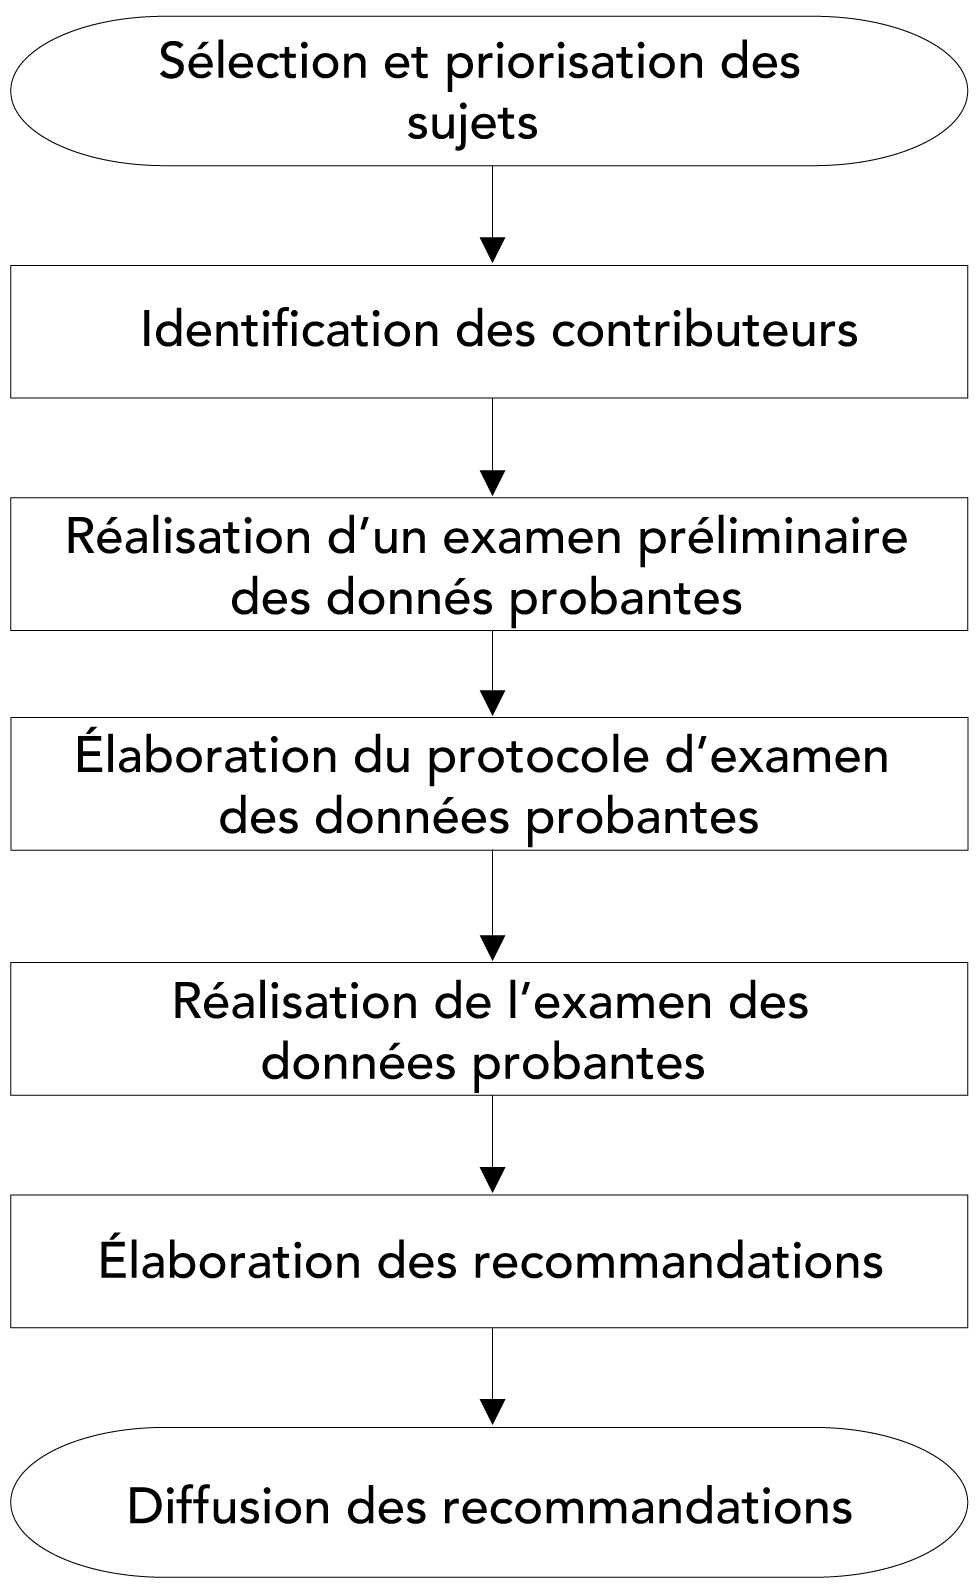 Figure 1 : Processus d'élaboration de recommandations